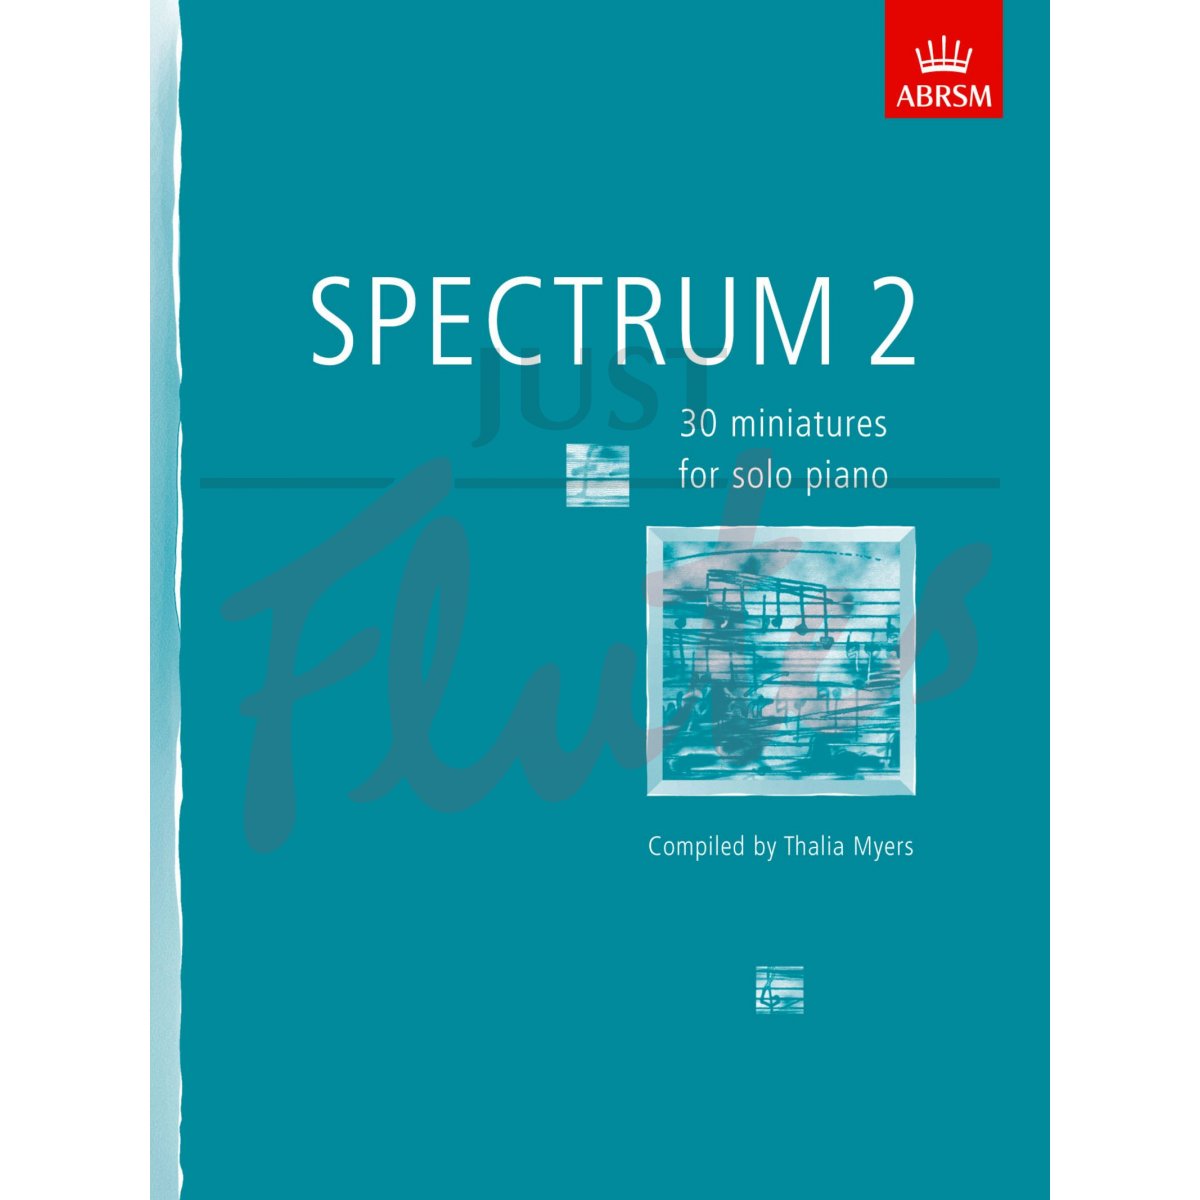 Spectrum 2 for Solo Piano